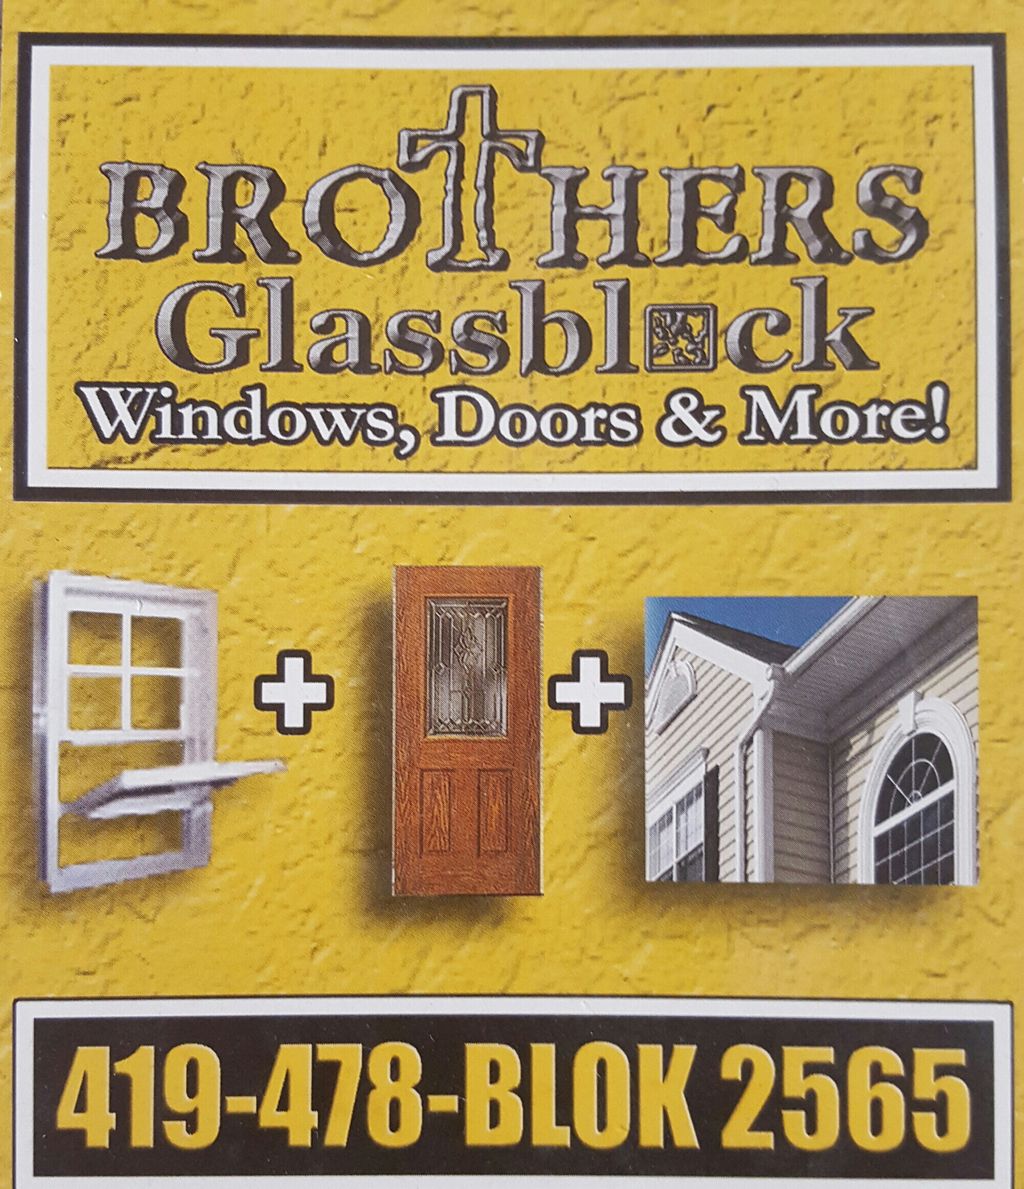 Brother's, Windows, Doors & More